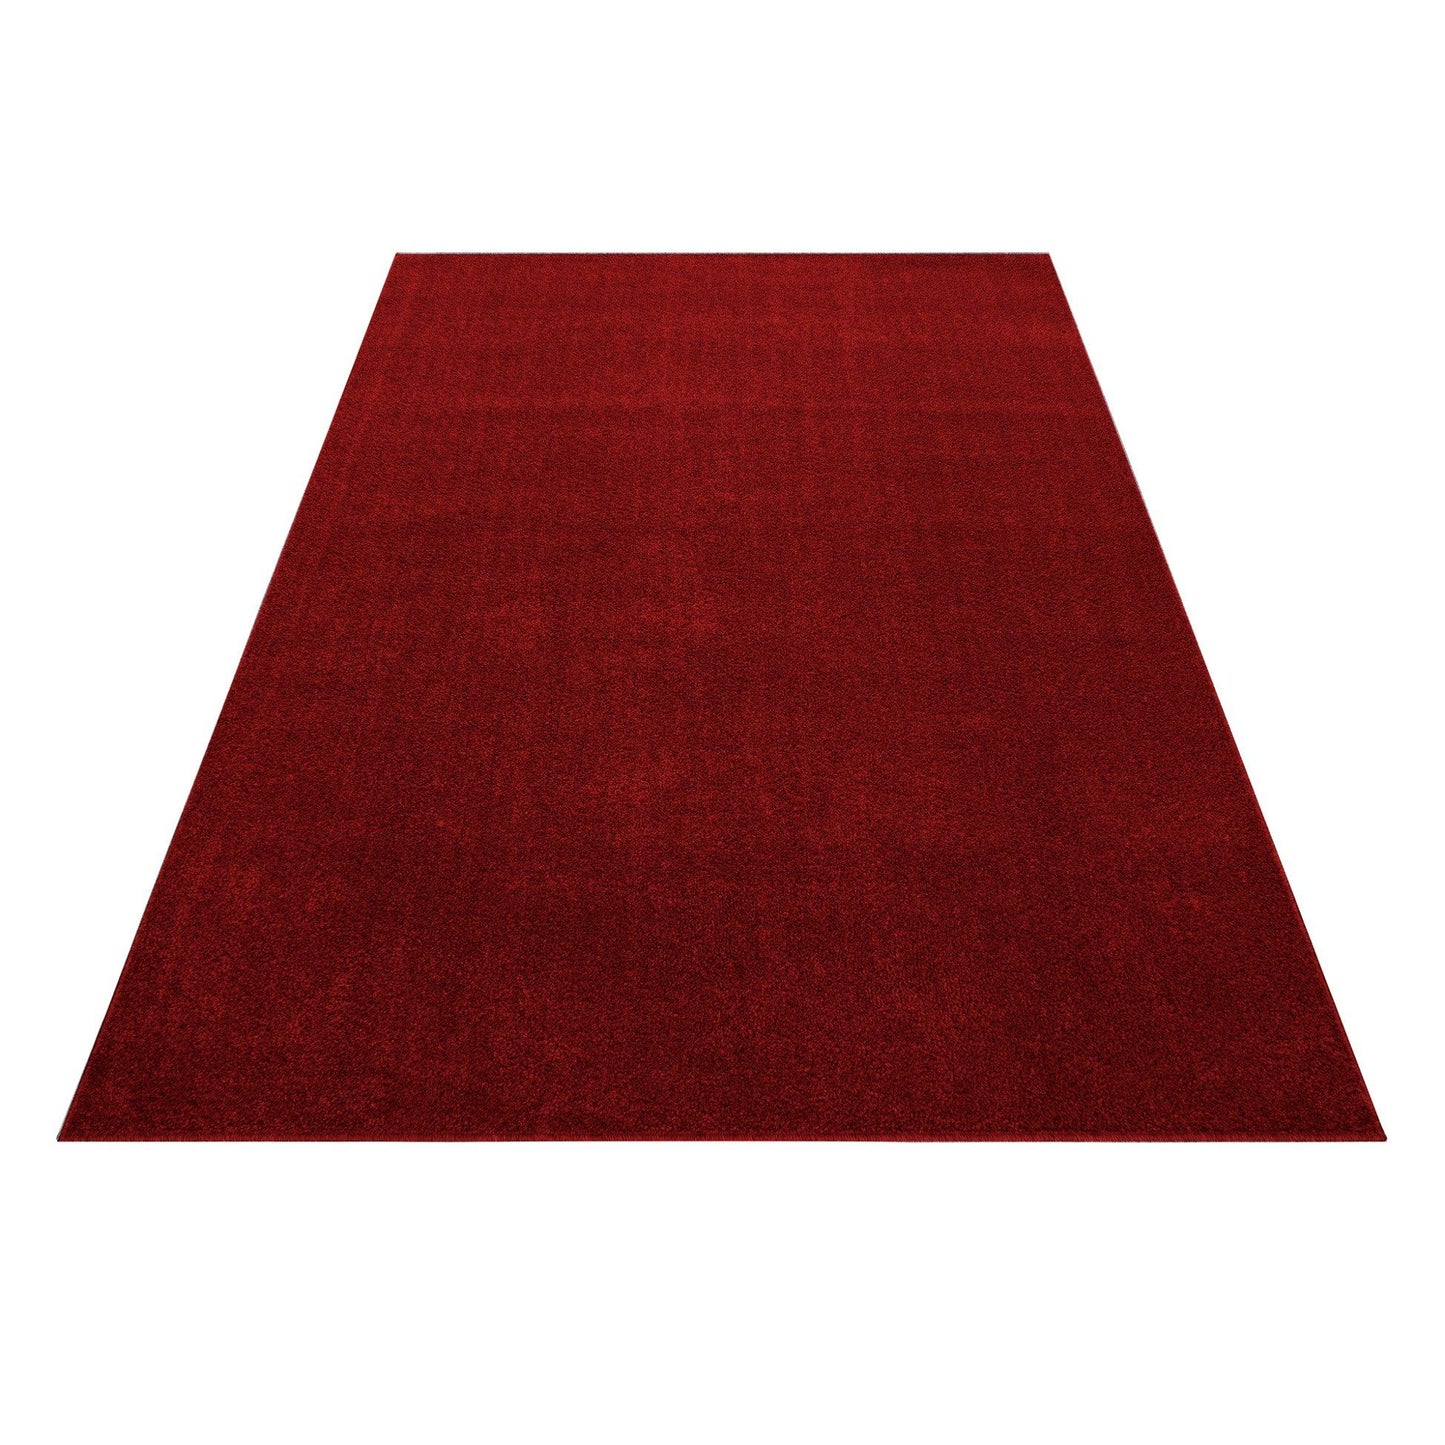 ATA7000RED Tæppe (80 x 150) - Rød